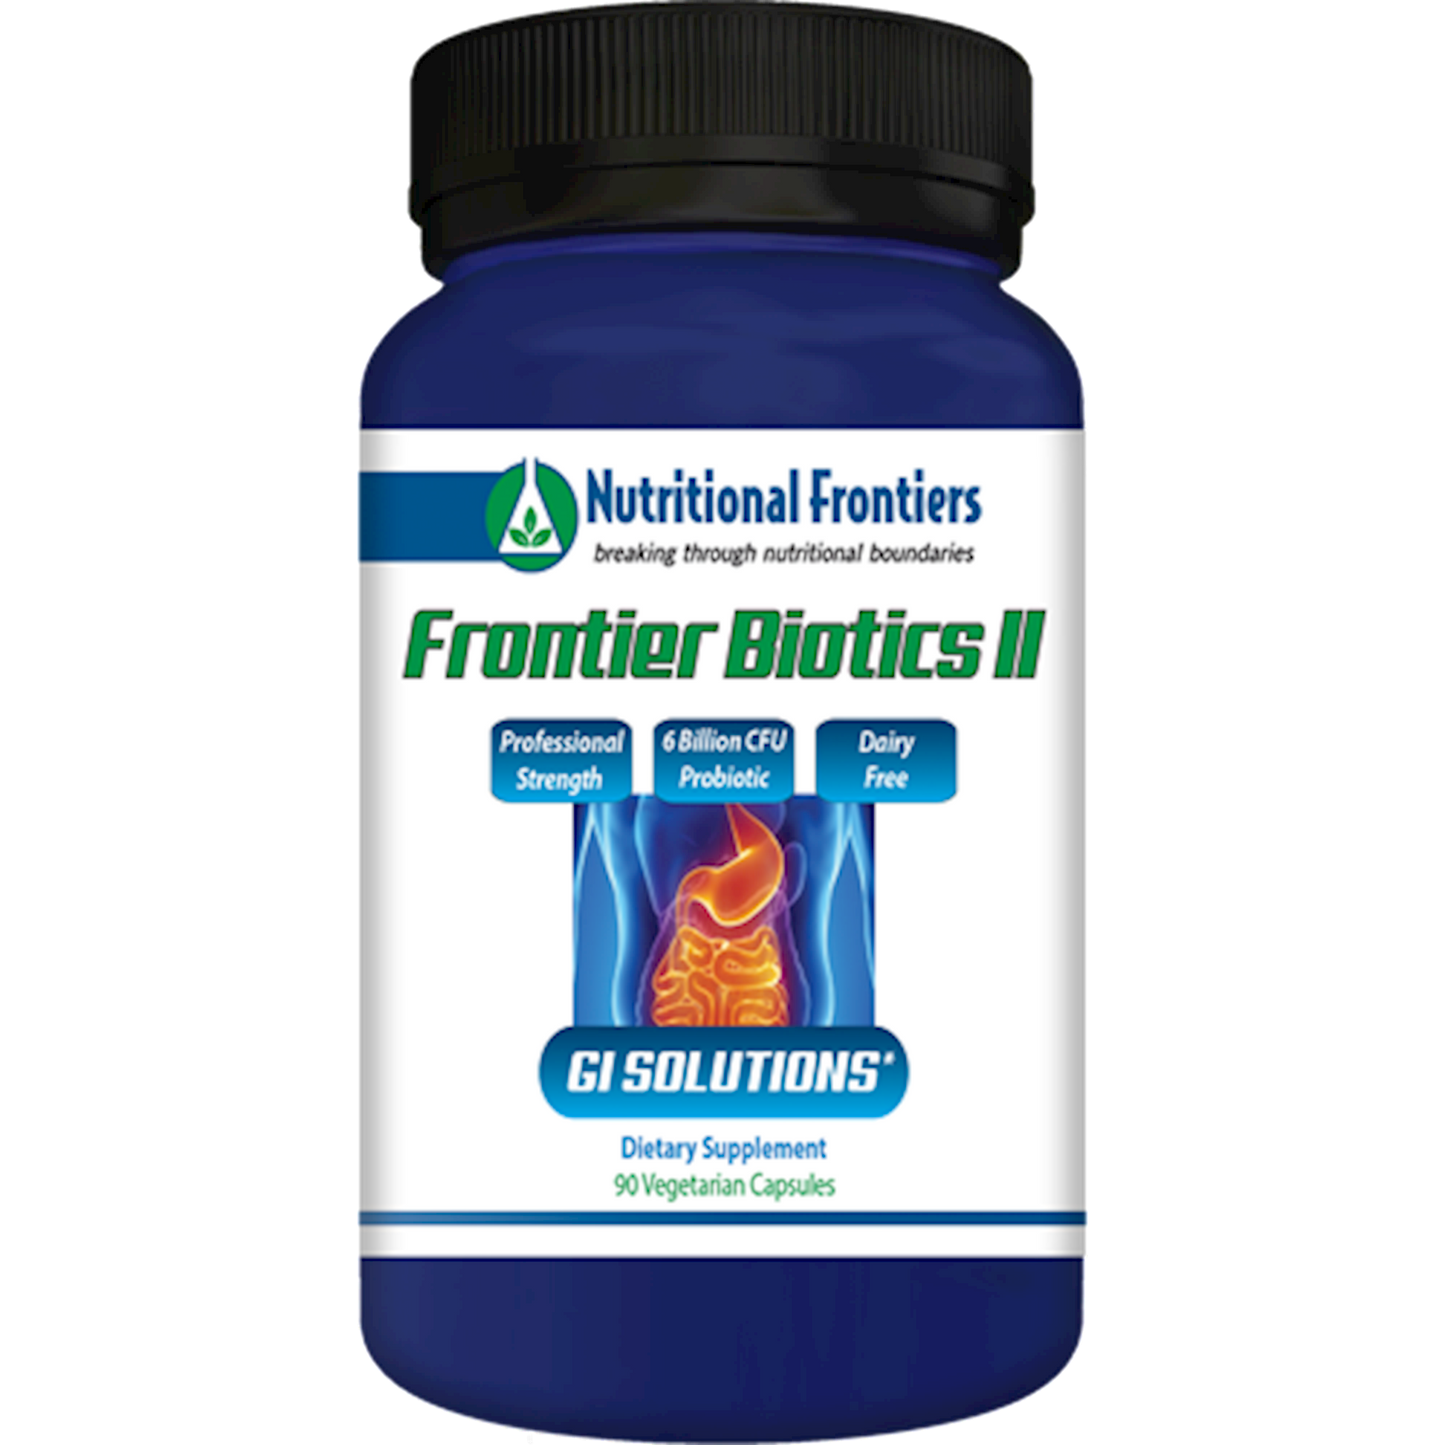 Frontier Biotics II